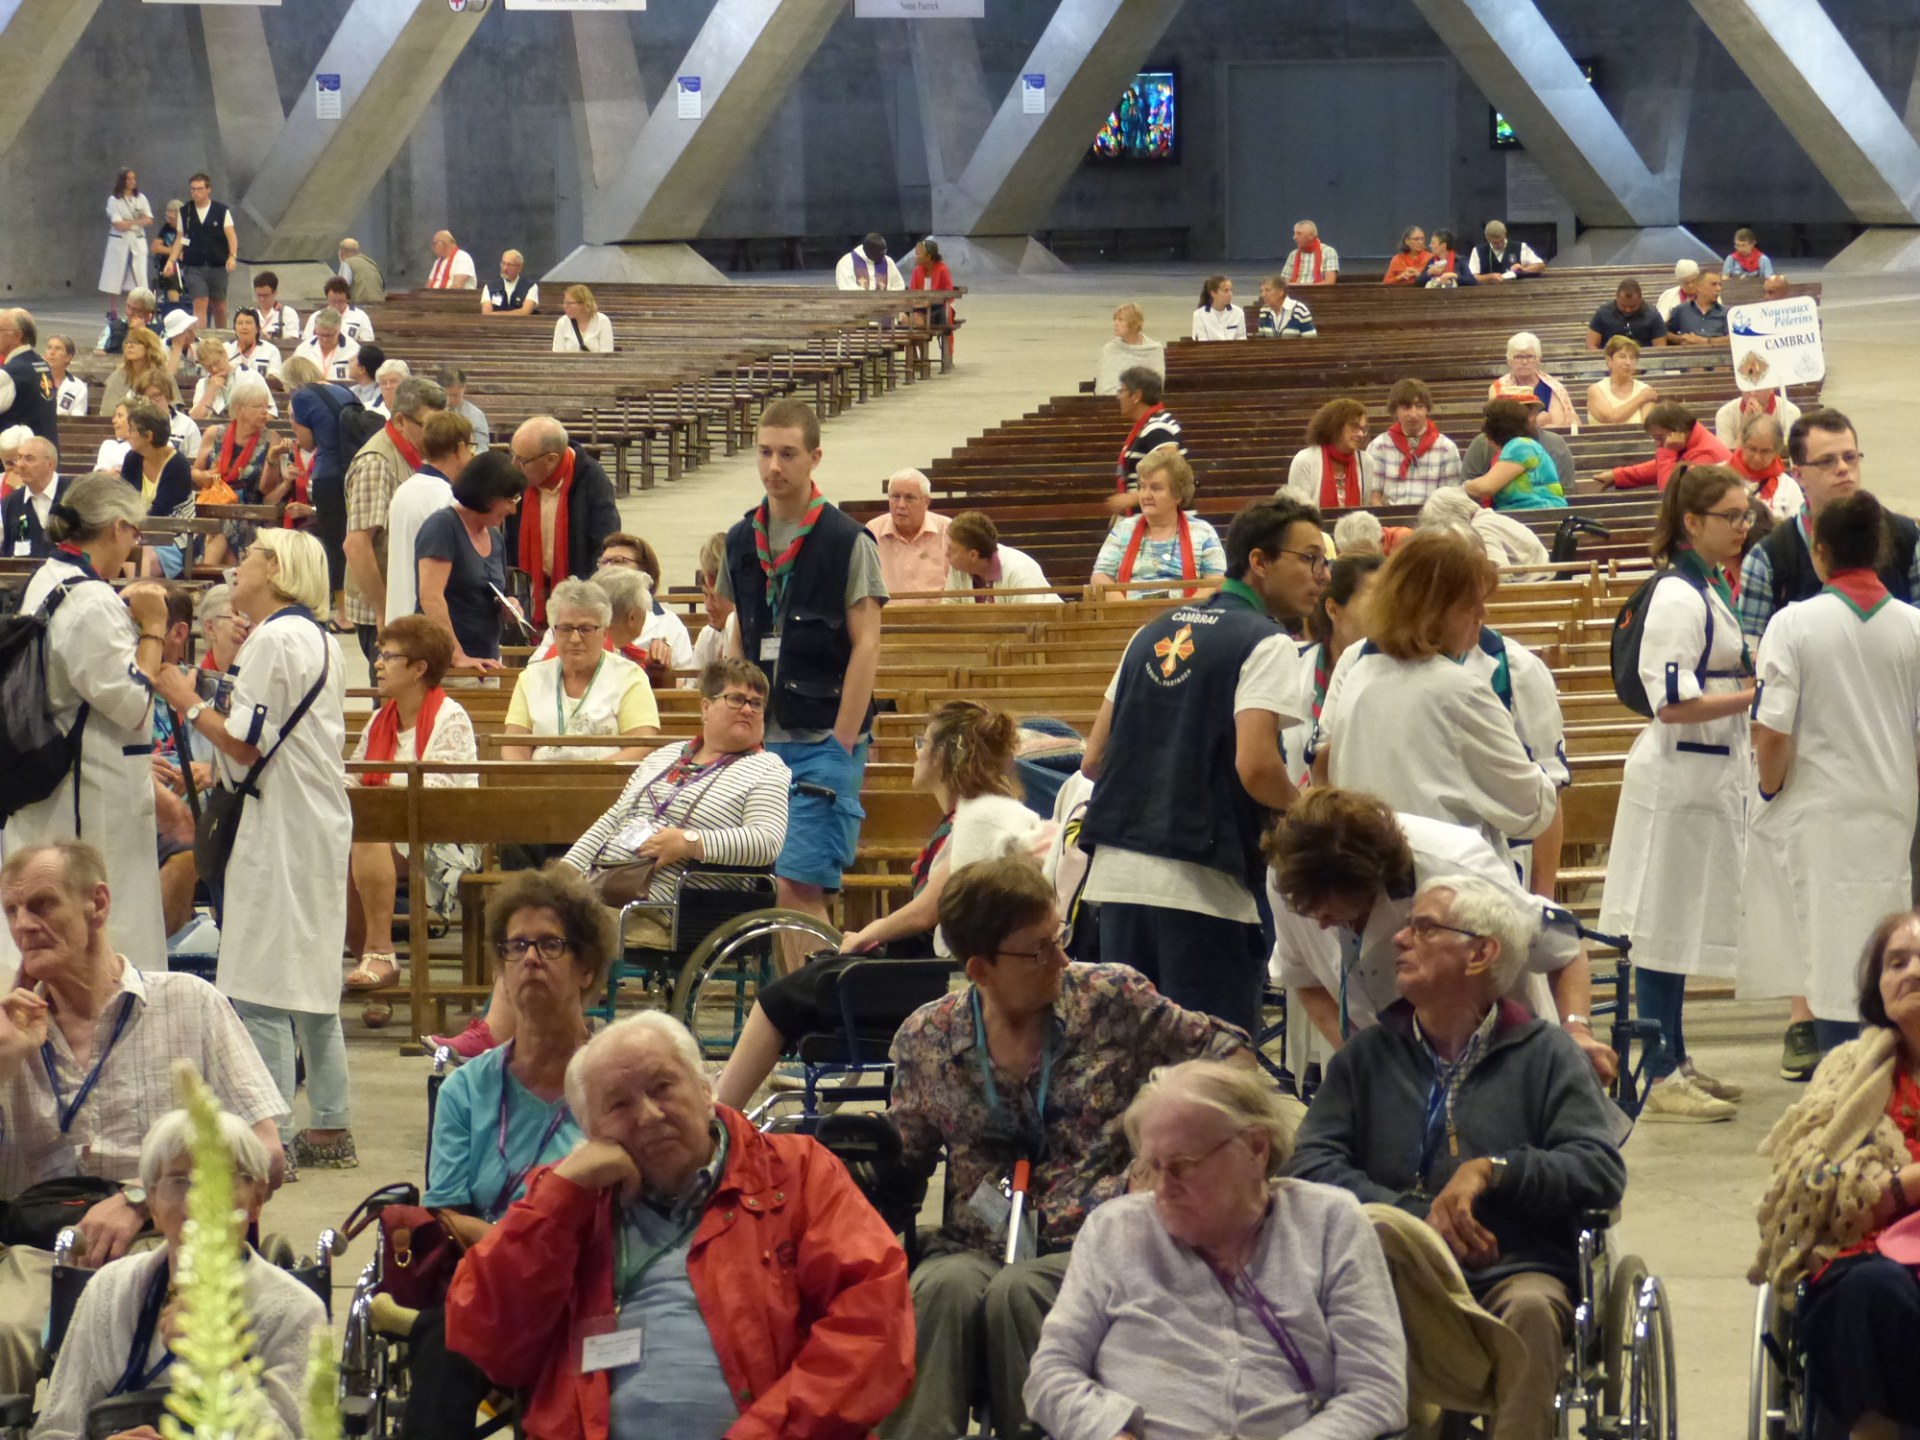 Lourdes2018-photos Sacrmt reconciliation (27)